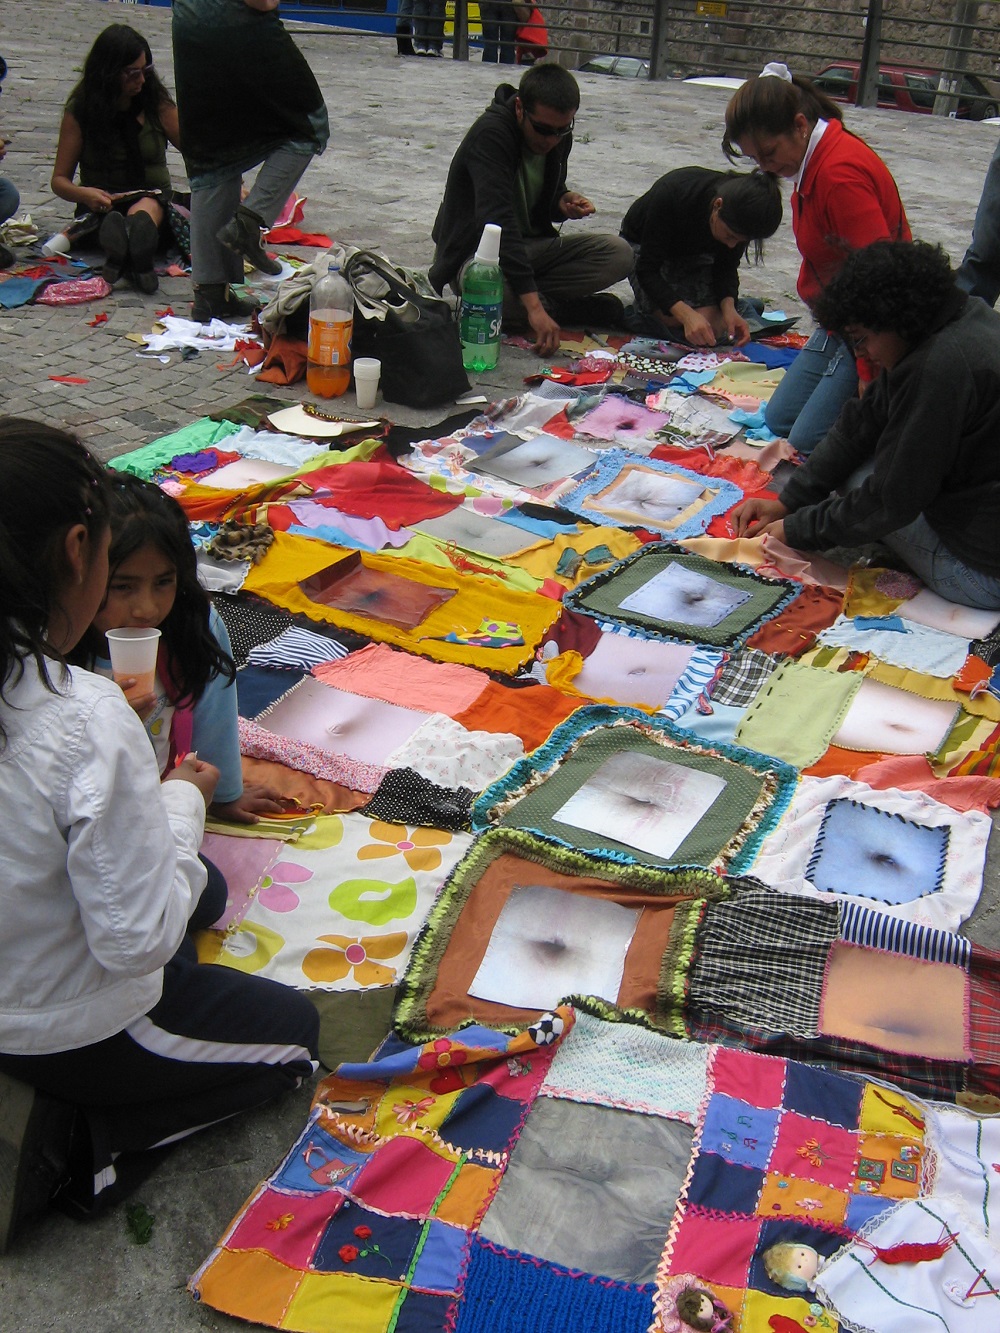 Colcha, proyecto de costura en la calle, dimensiones variables, 2007